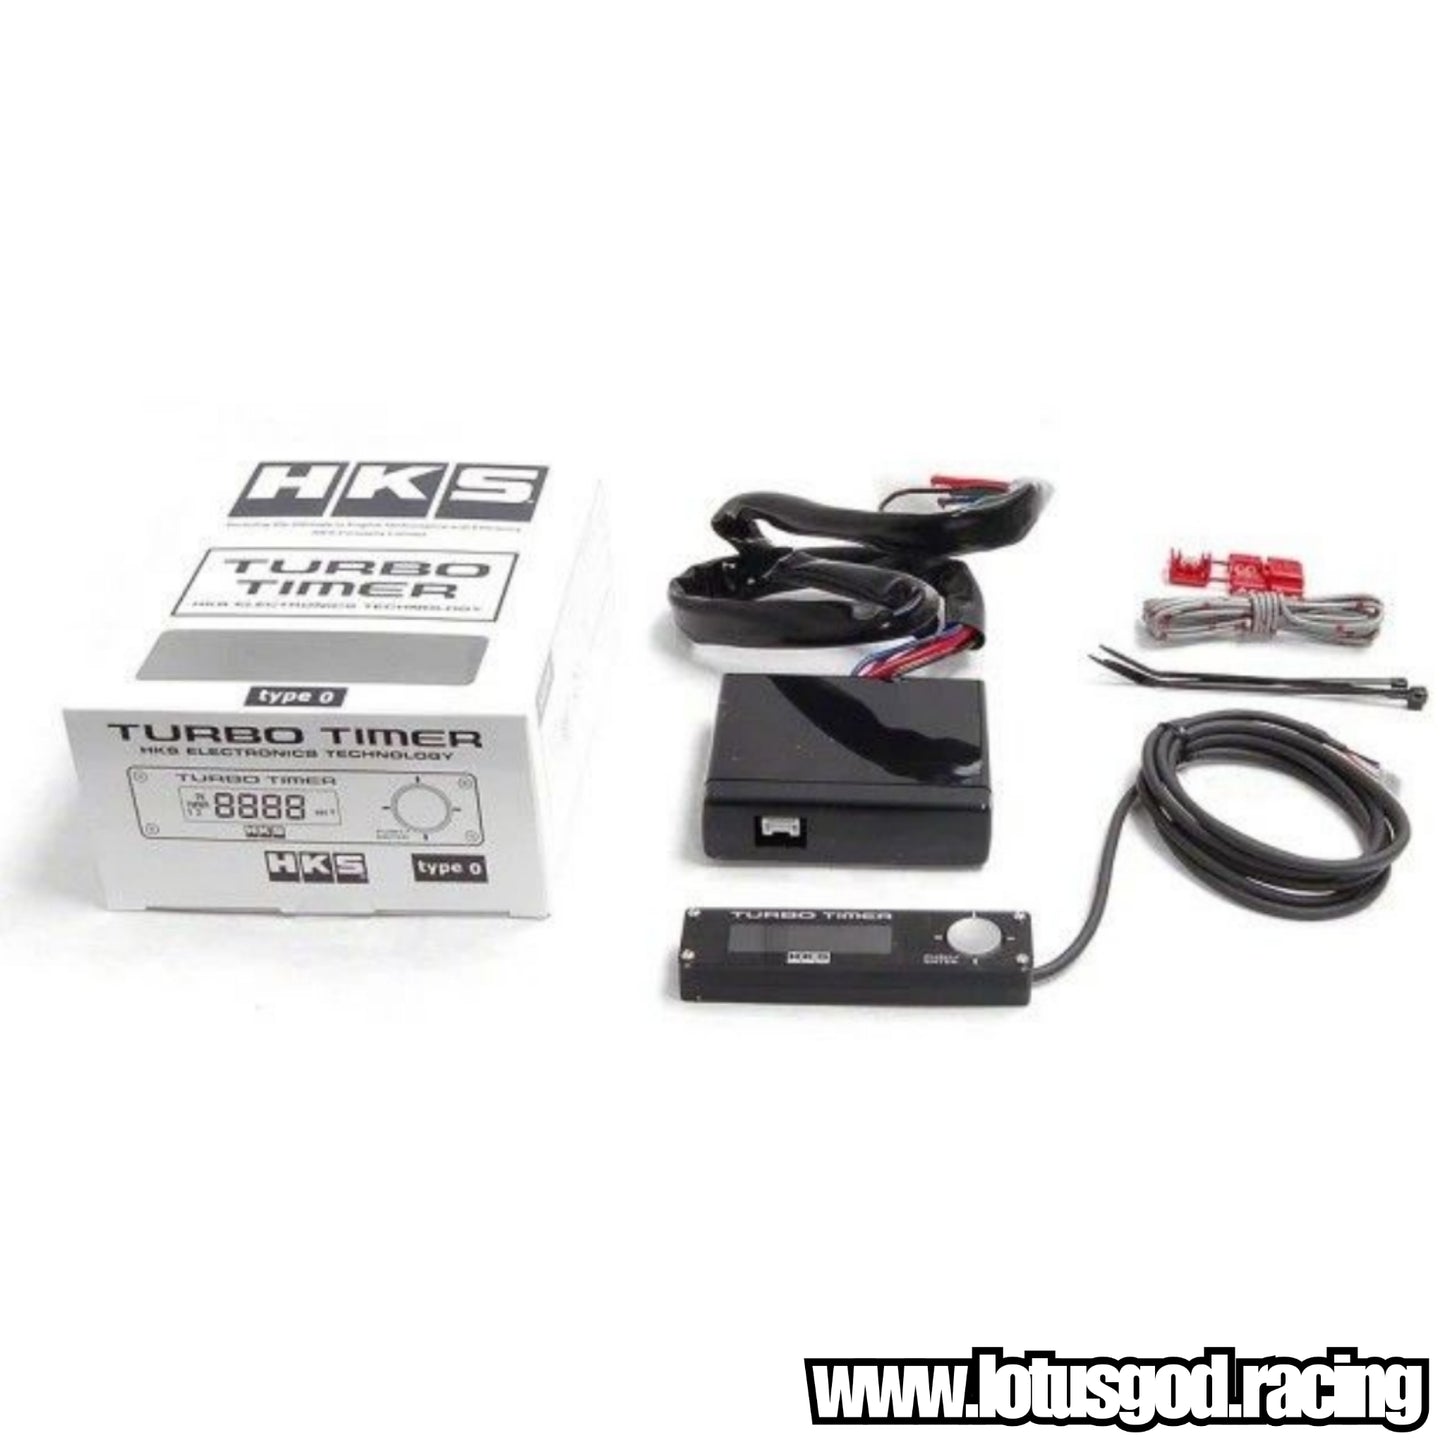 HKS Racing Car Black Turbo Timer LED Type 0 Digital Led Display Count Down Engine Timer